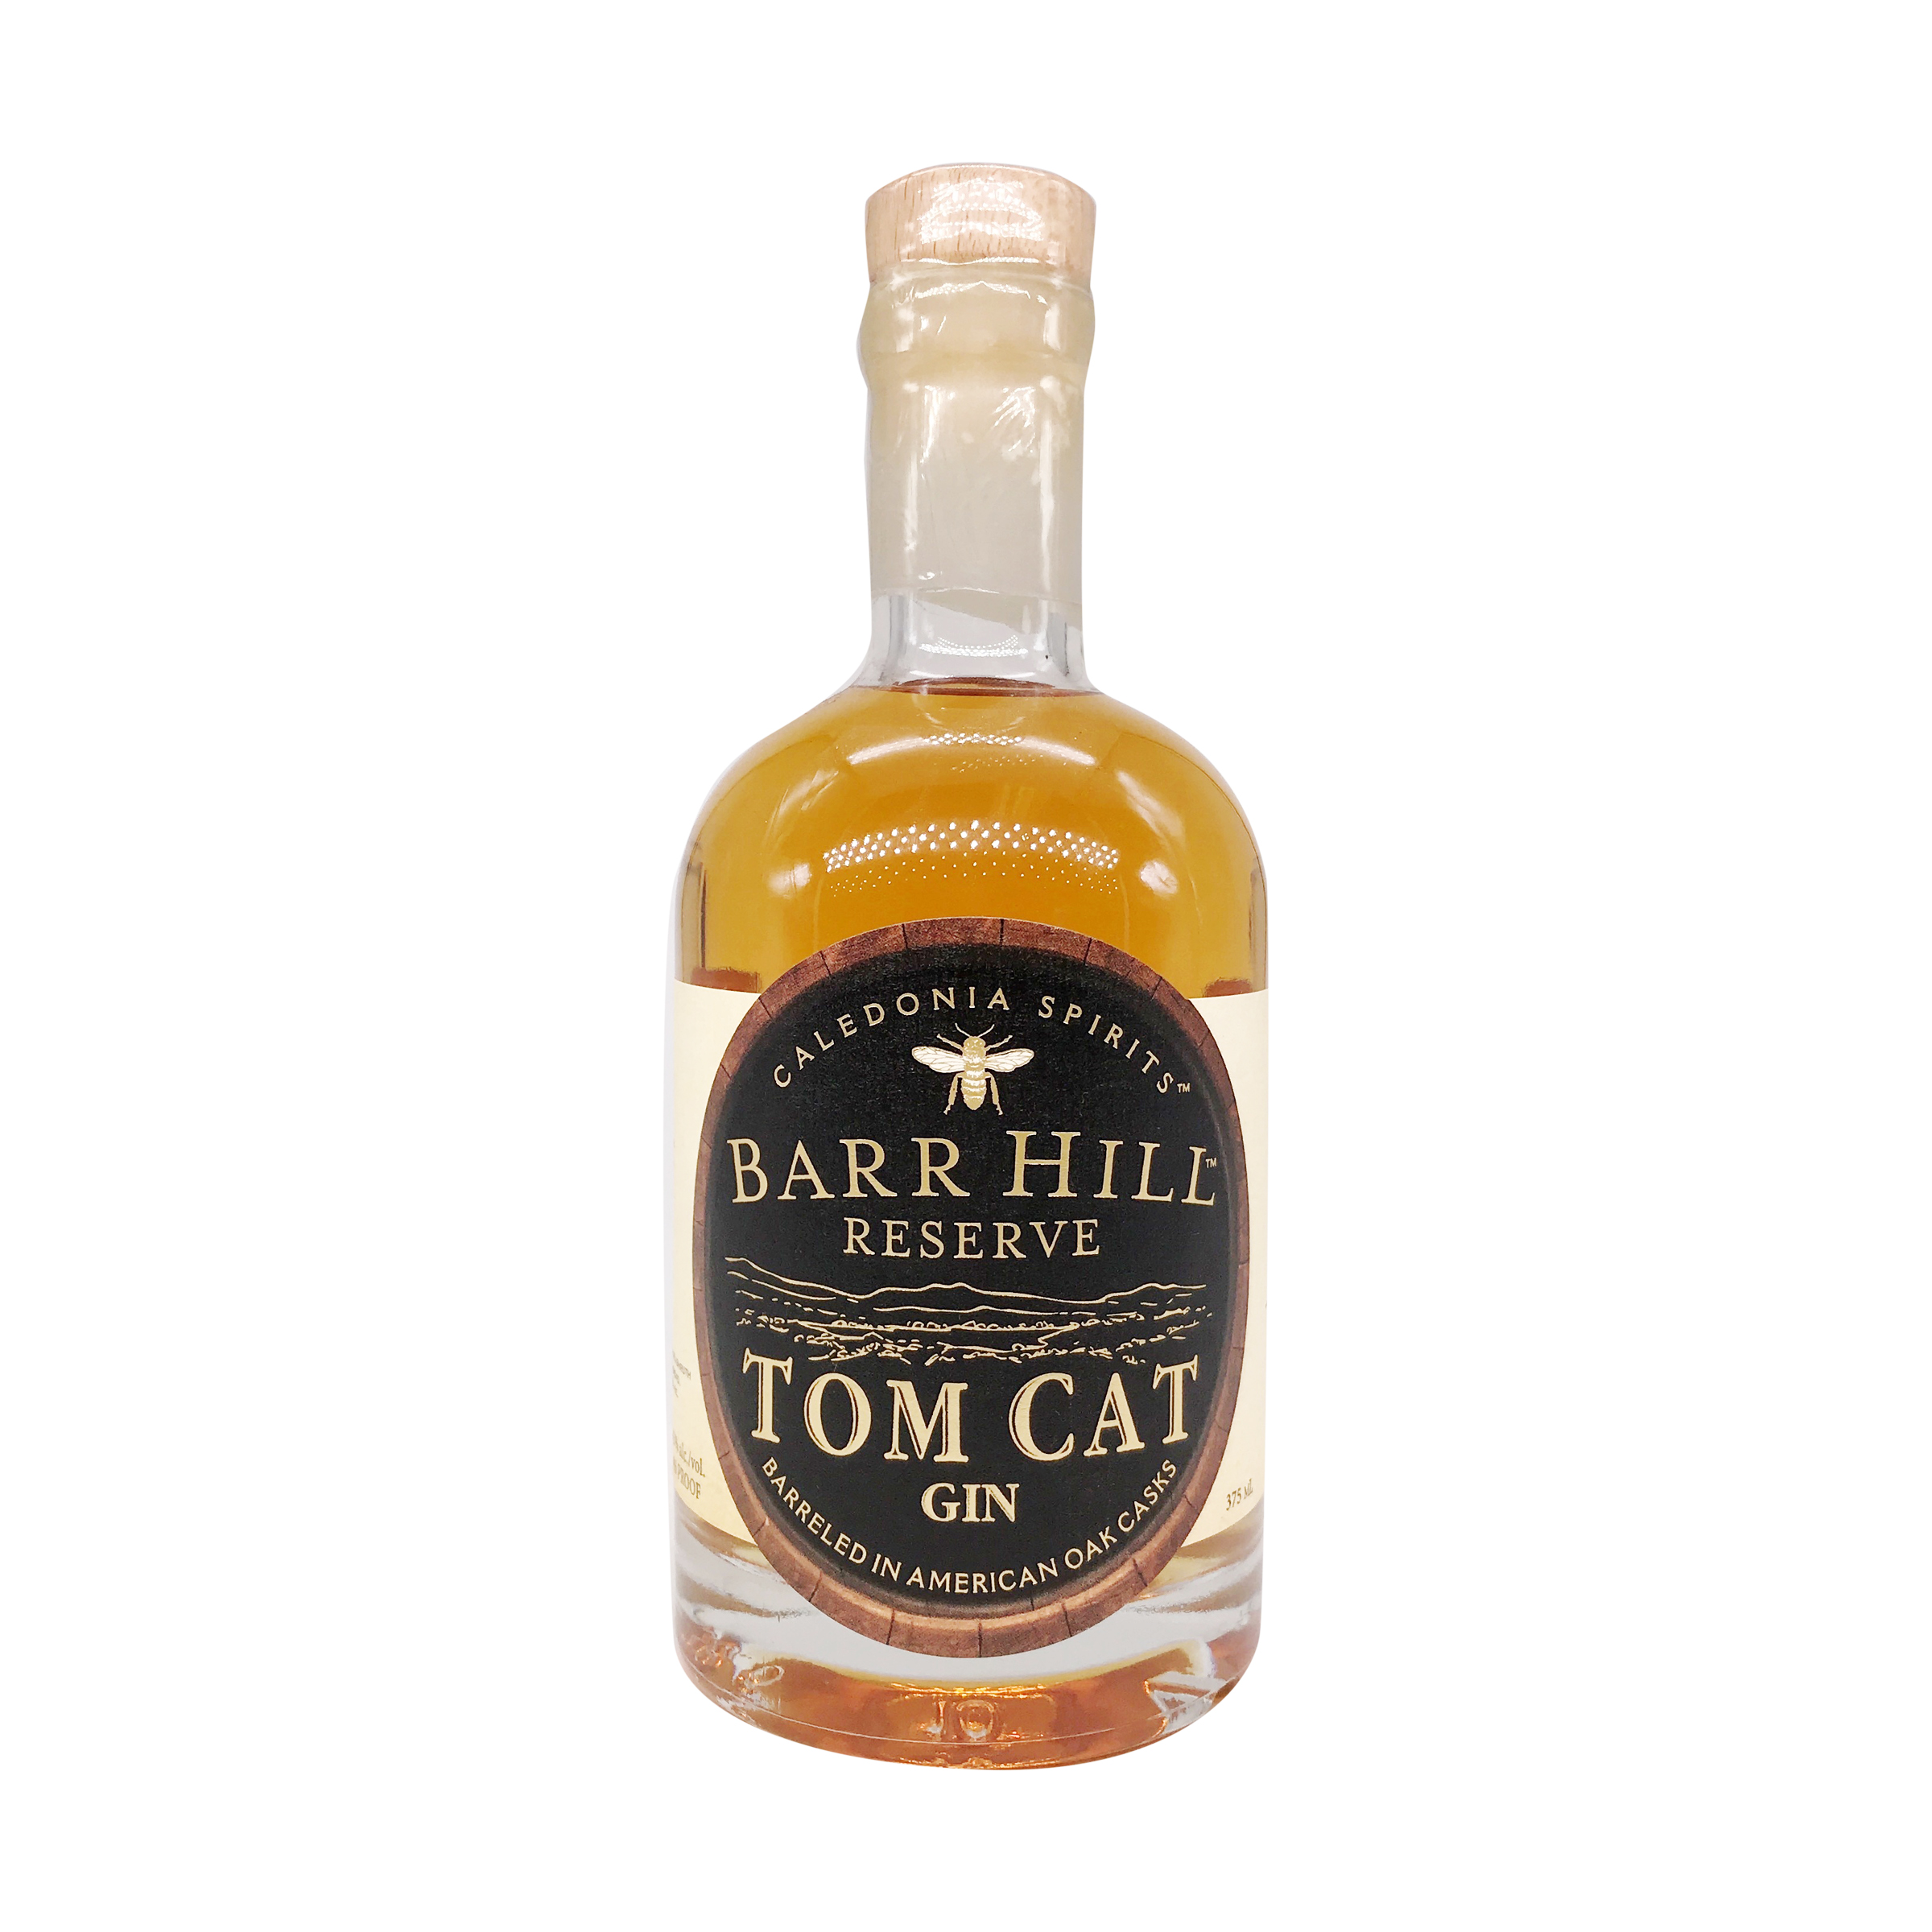 Barr Hill Tom Cat Gin